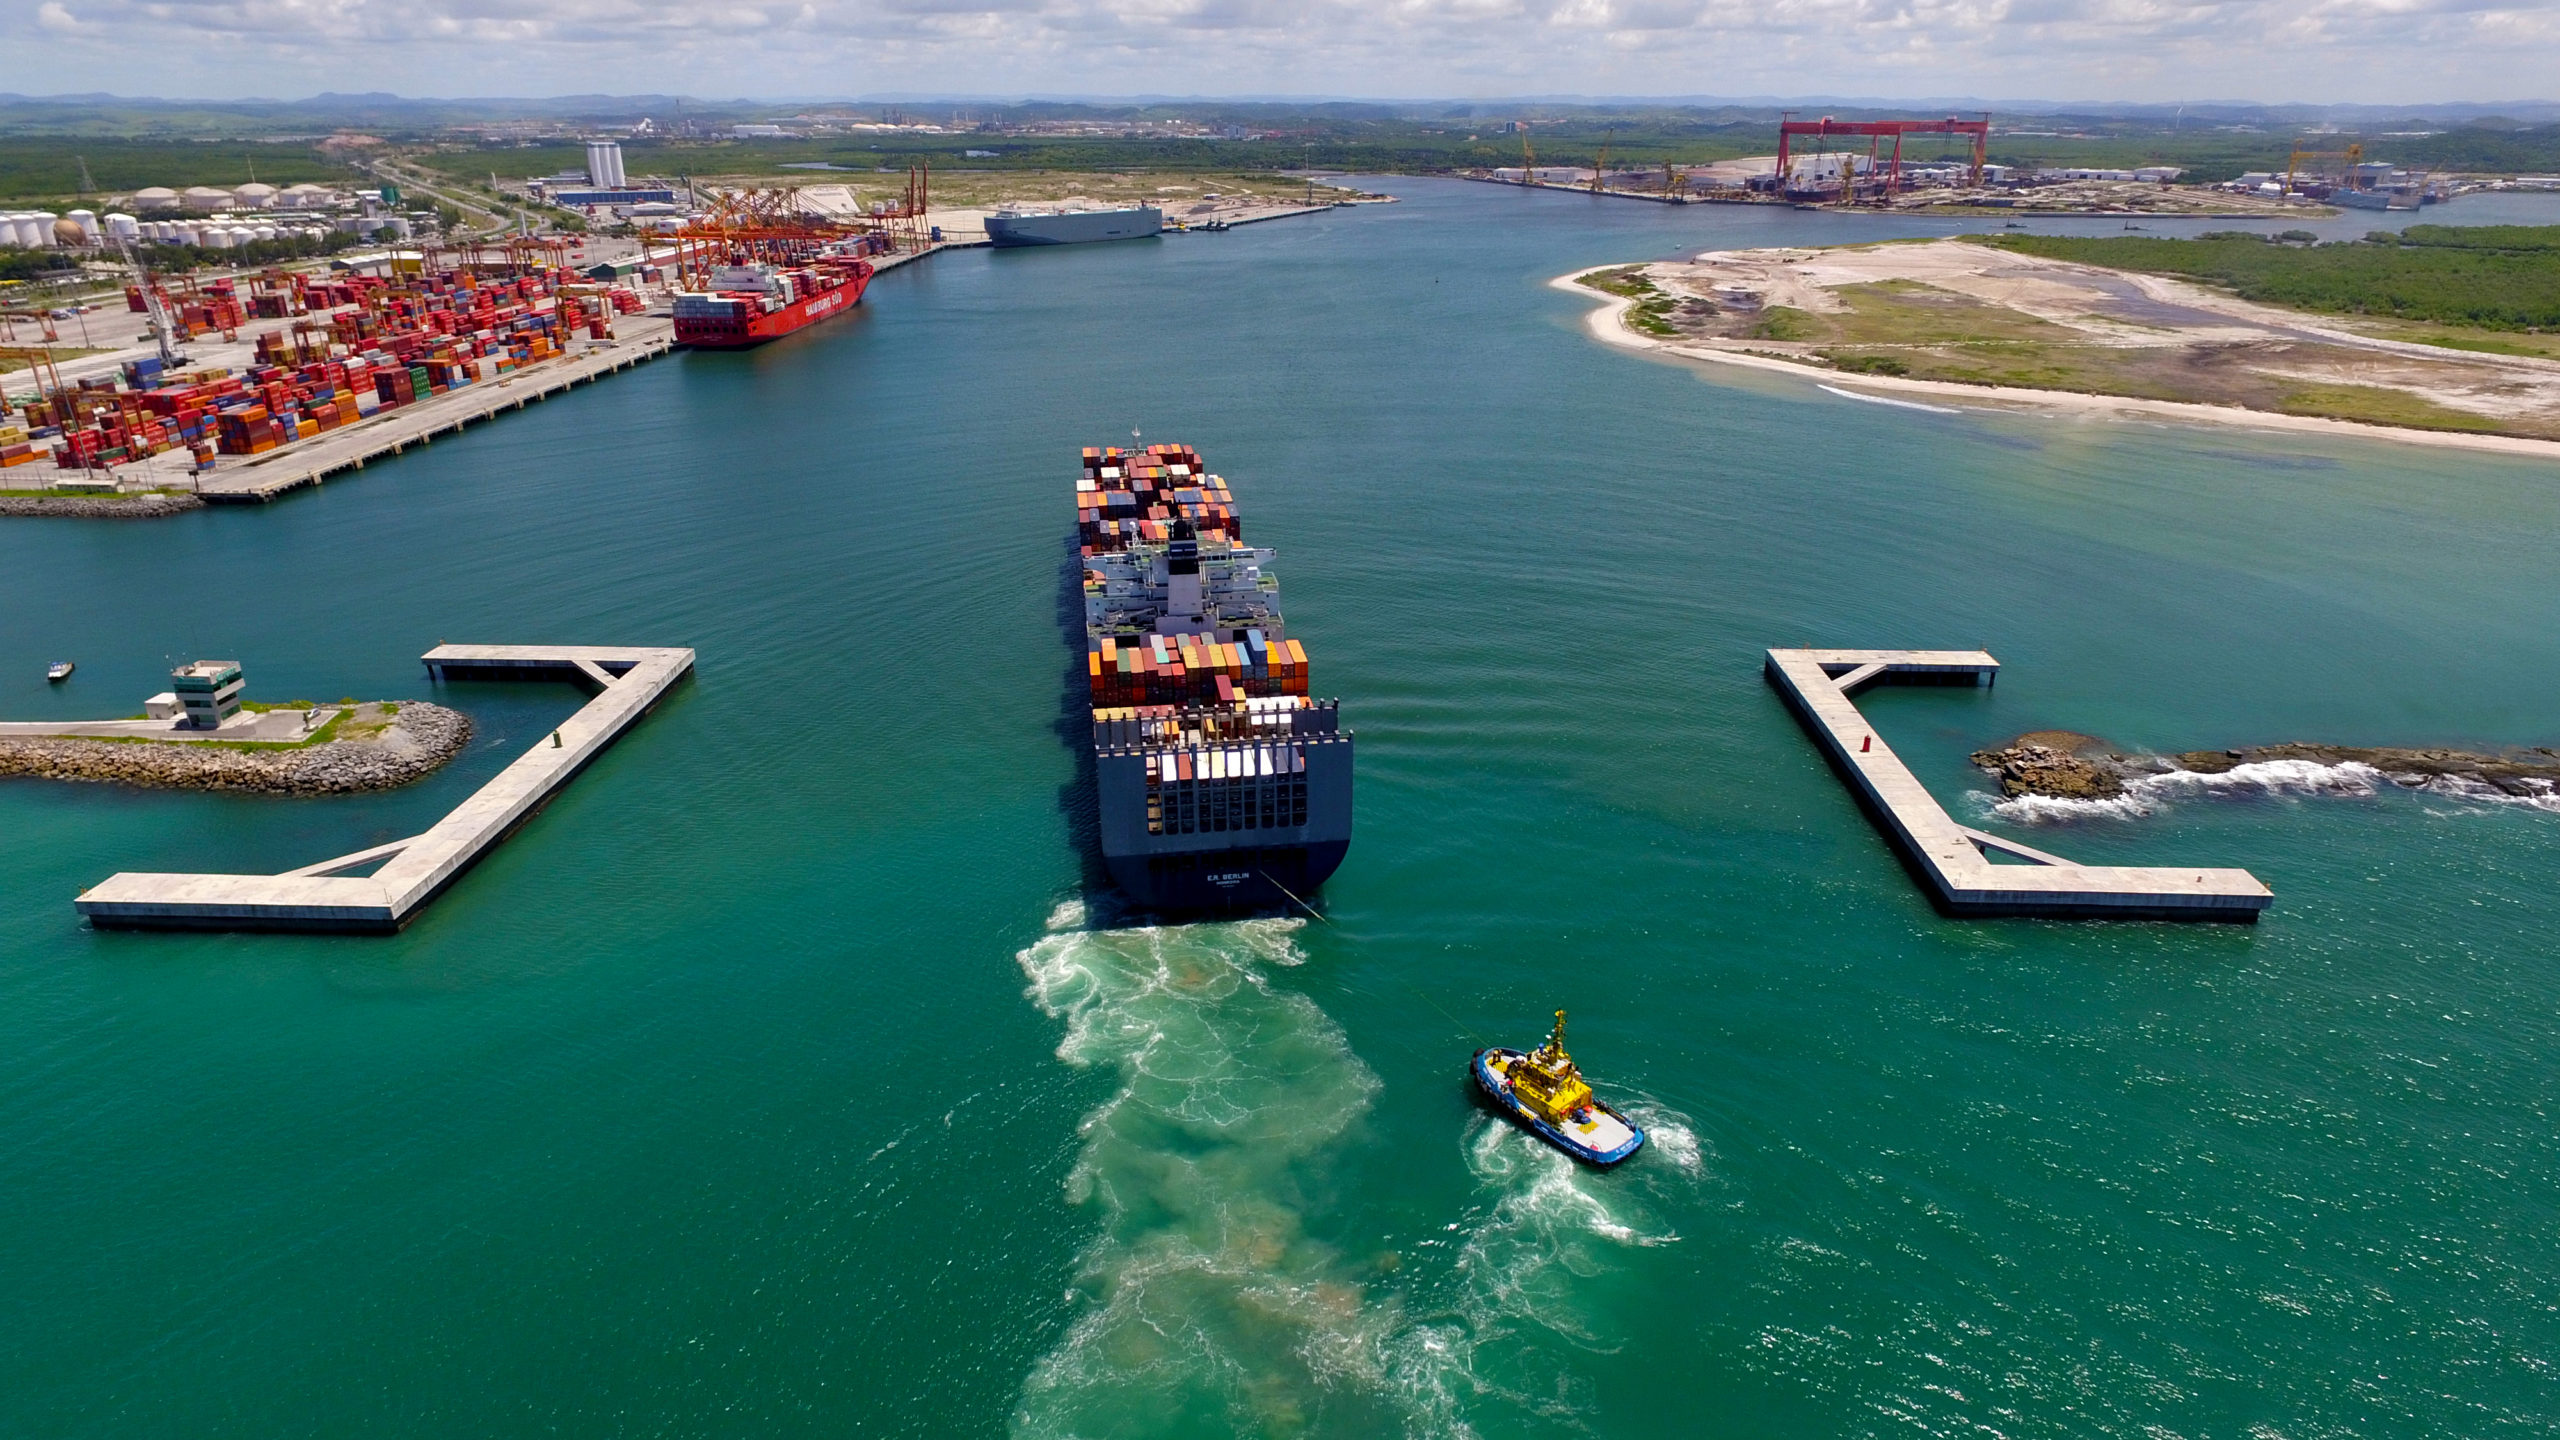 Suape prepara chamada pública para planta de hidrogênio verde com 1GW de capacidade. Na imagem, navio cargueiro entrando no Porto de Suape (Foto: Divulgação)